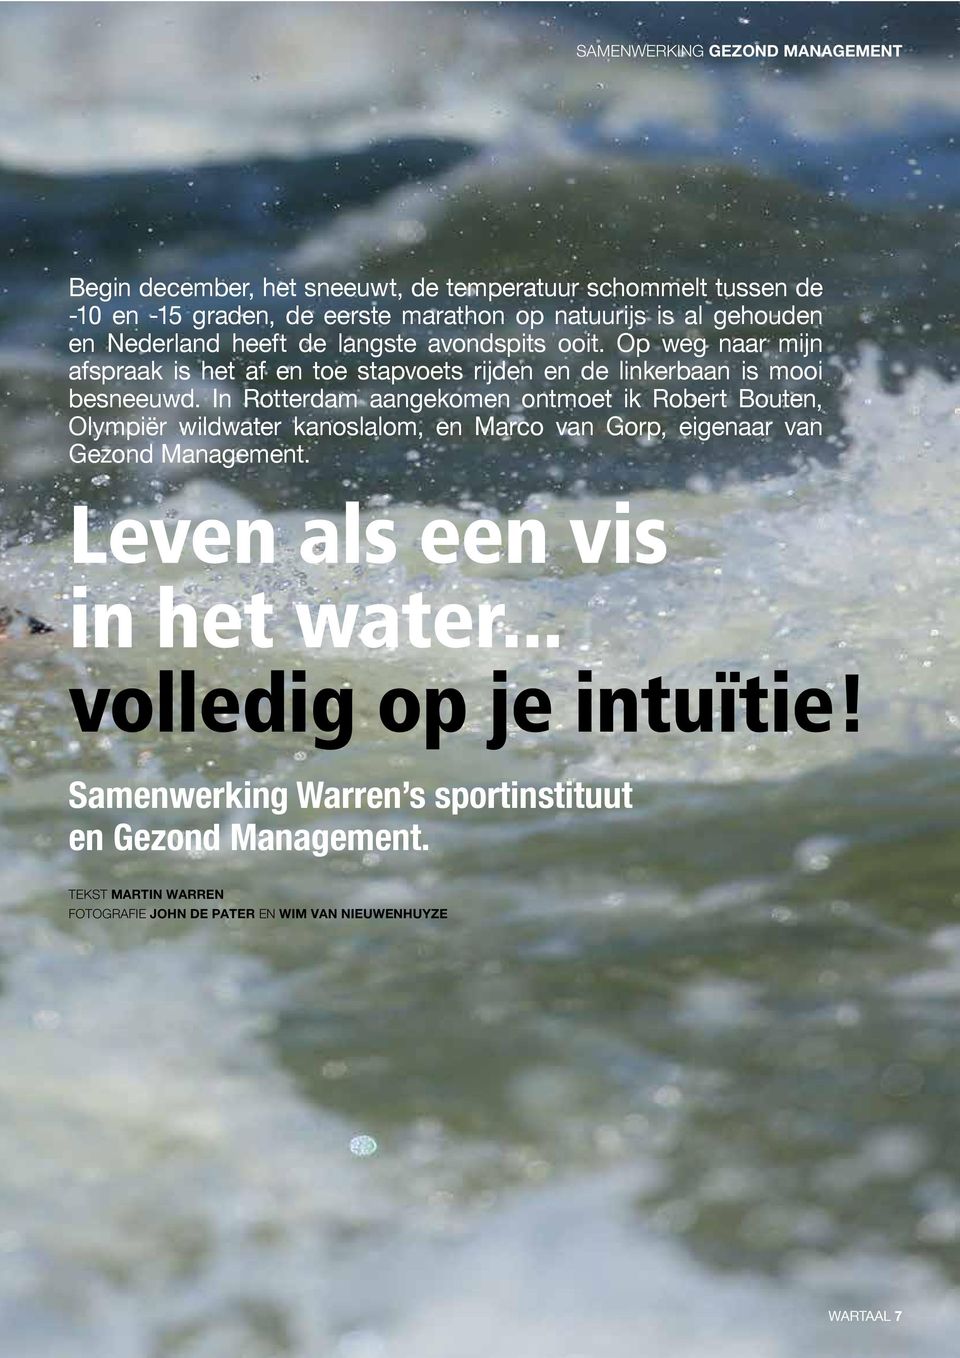 In Rotterdam aangekomen ontmoet ik Robert Bouten, Olympiër wildwater kanoslalom, en Marco van Gorp, eigenaar van Gezond Management.